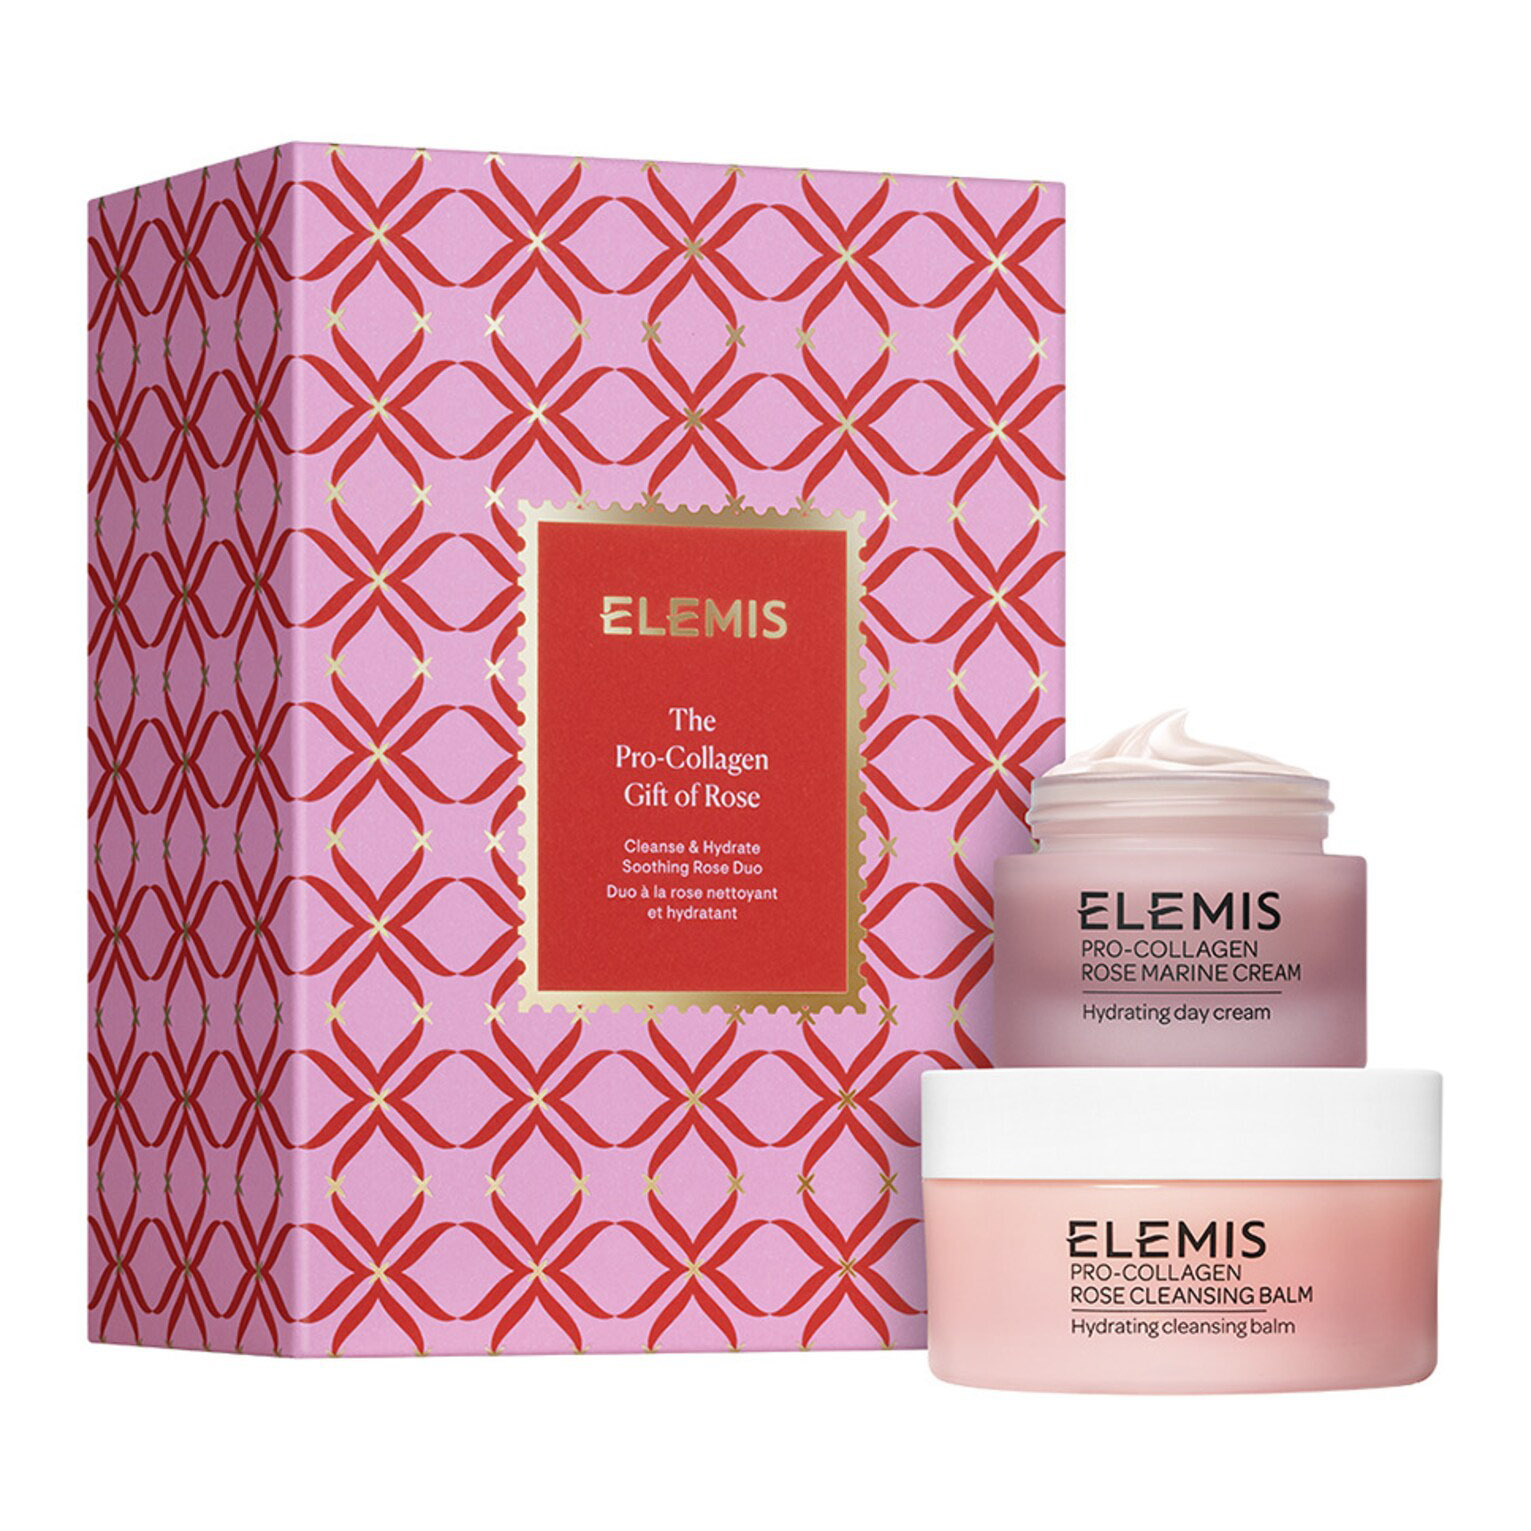 Подарочный набор Elemis The Pro-Collagen Gift Of Rose, 2 предмета набор средств для лица elemis набор pro collagen skincare stories